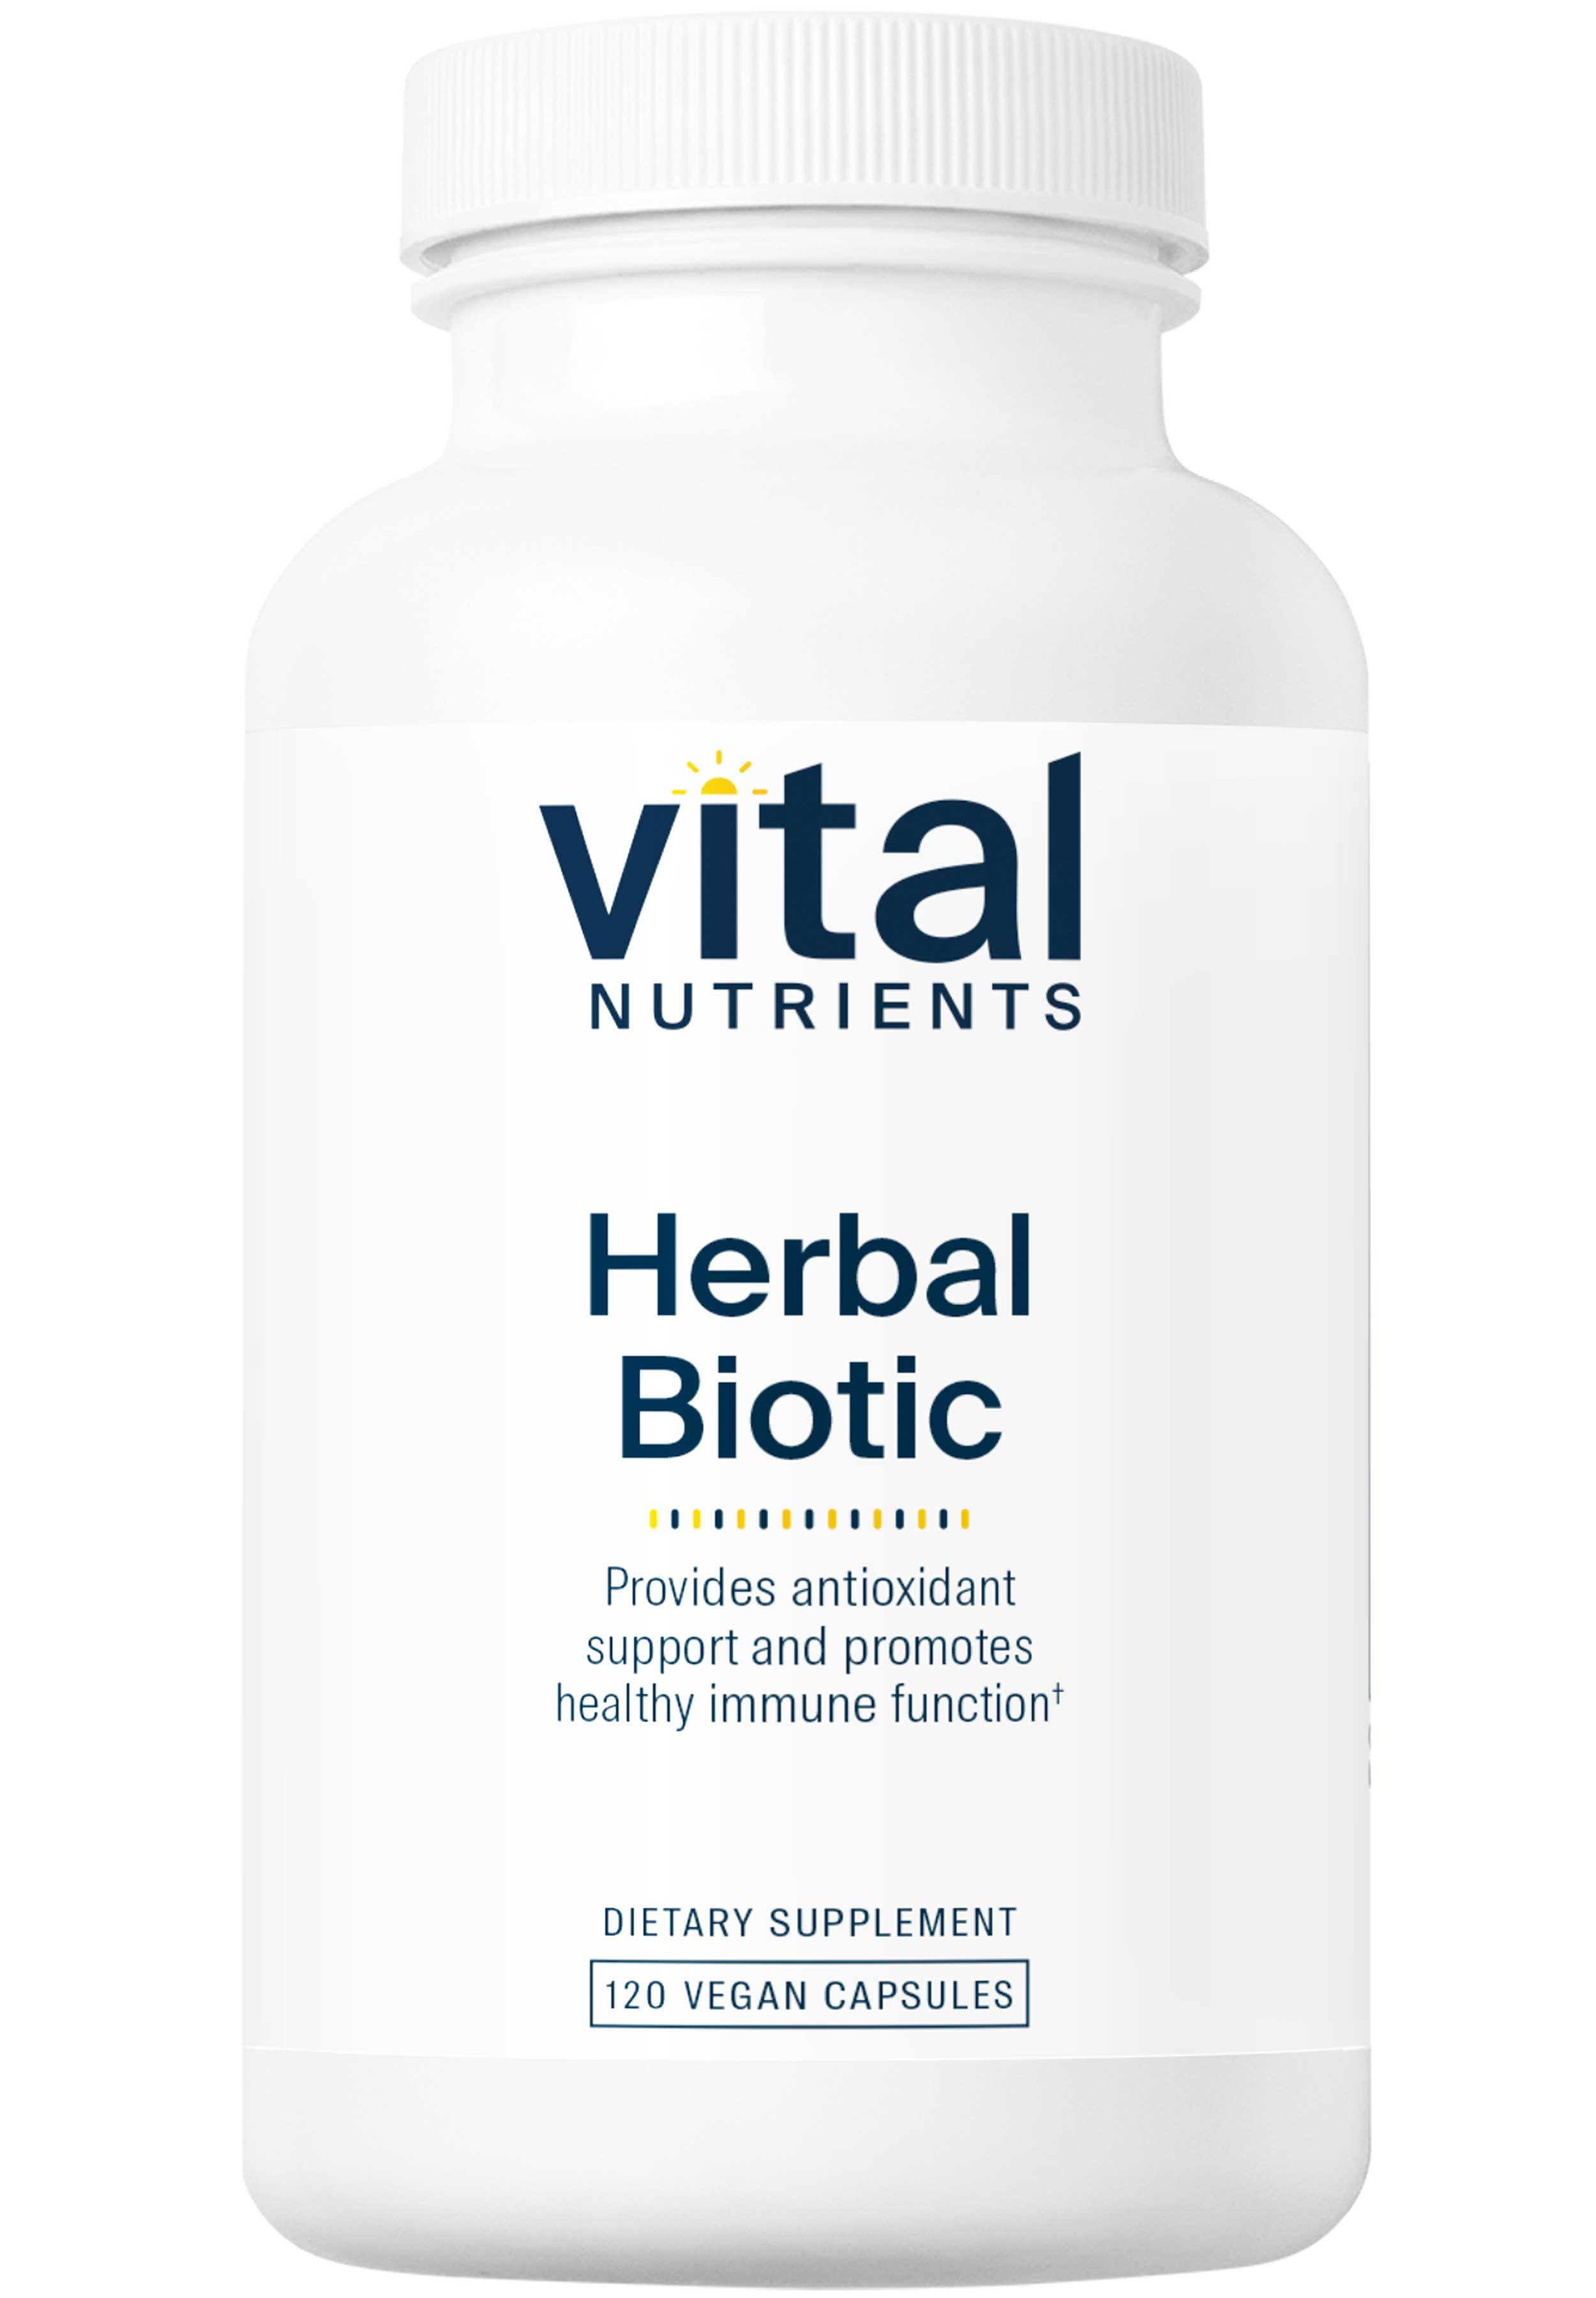 Vital Nutrients Herbal Biotic